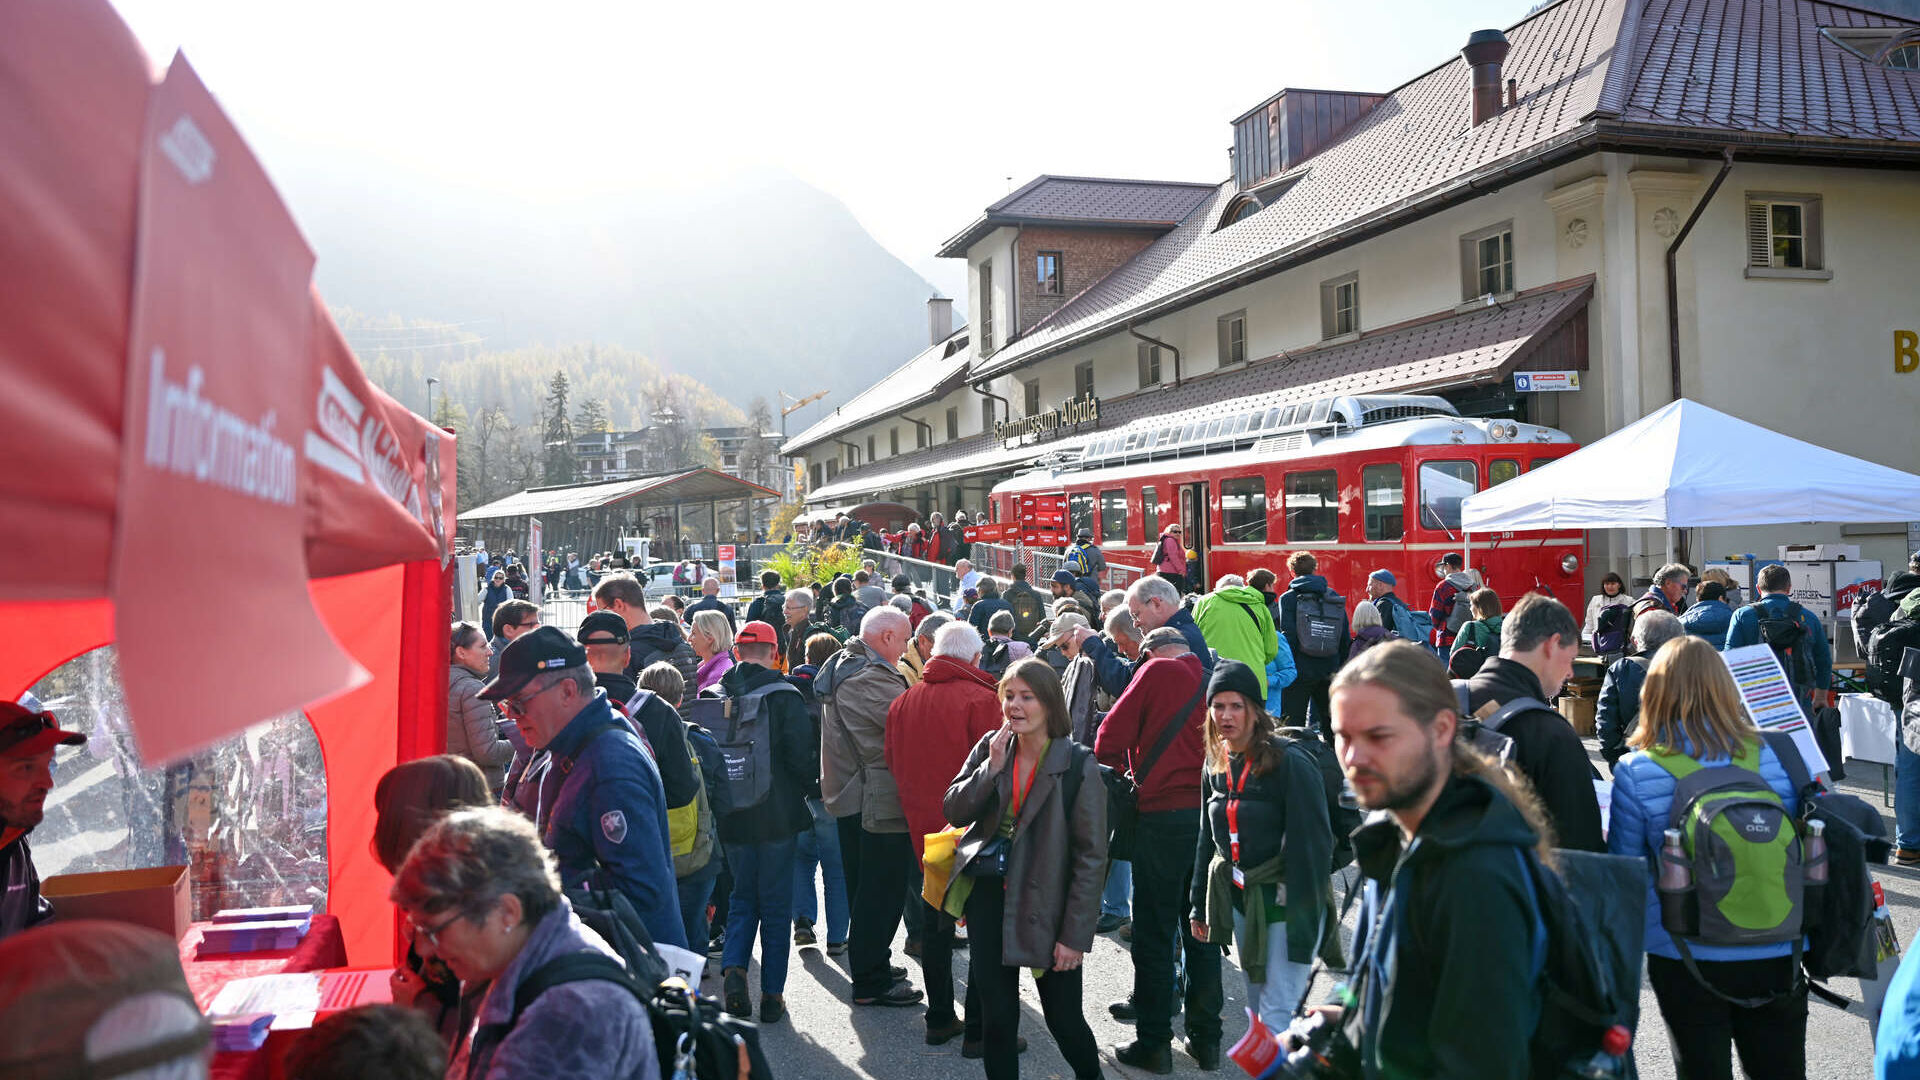 Retitan temir yo'llari dunyodagi eng uzun tor poezd rekordi paytida Graubünden jamoatchiligi uchun tadbirlar